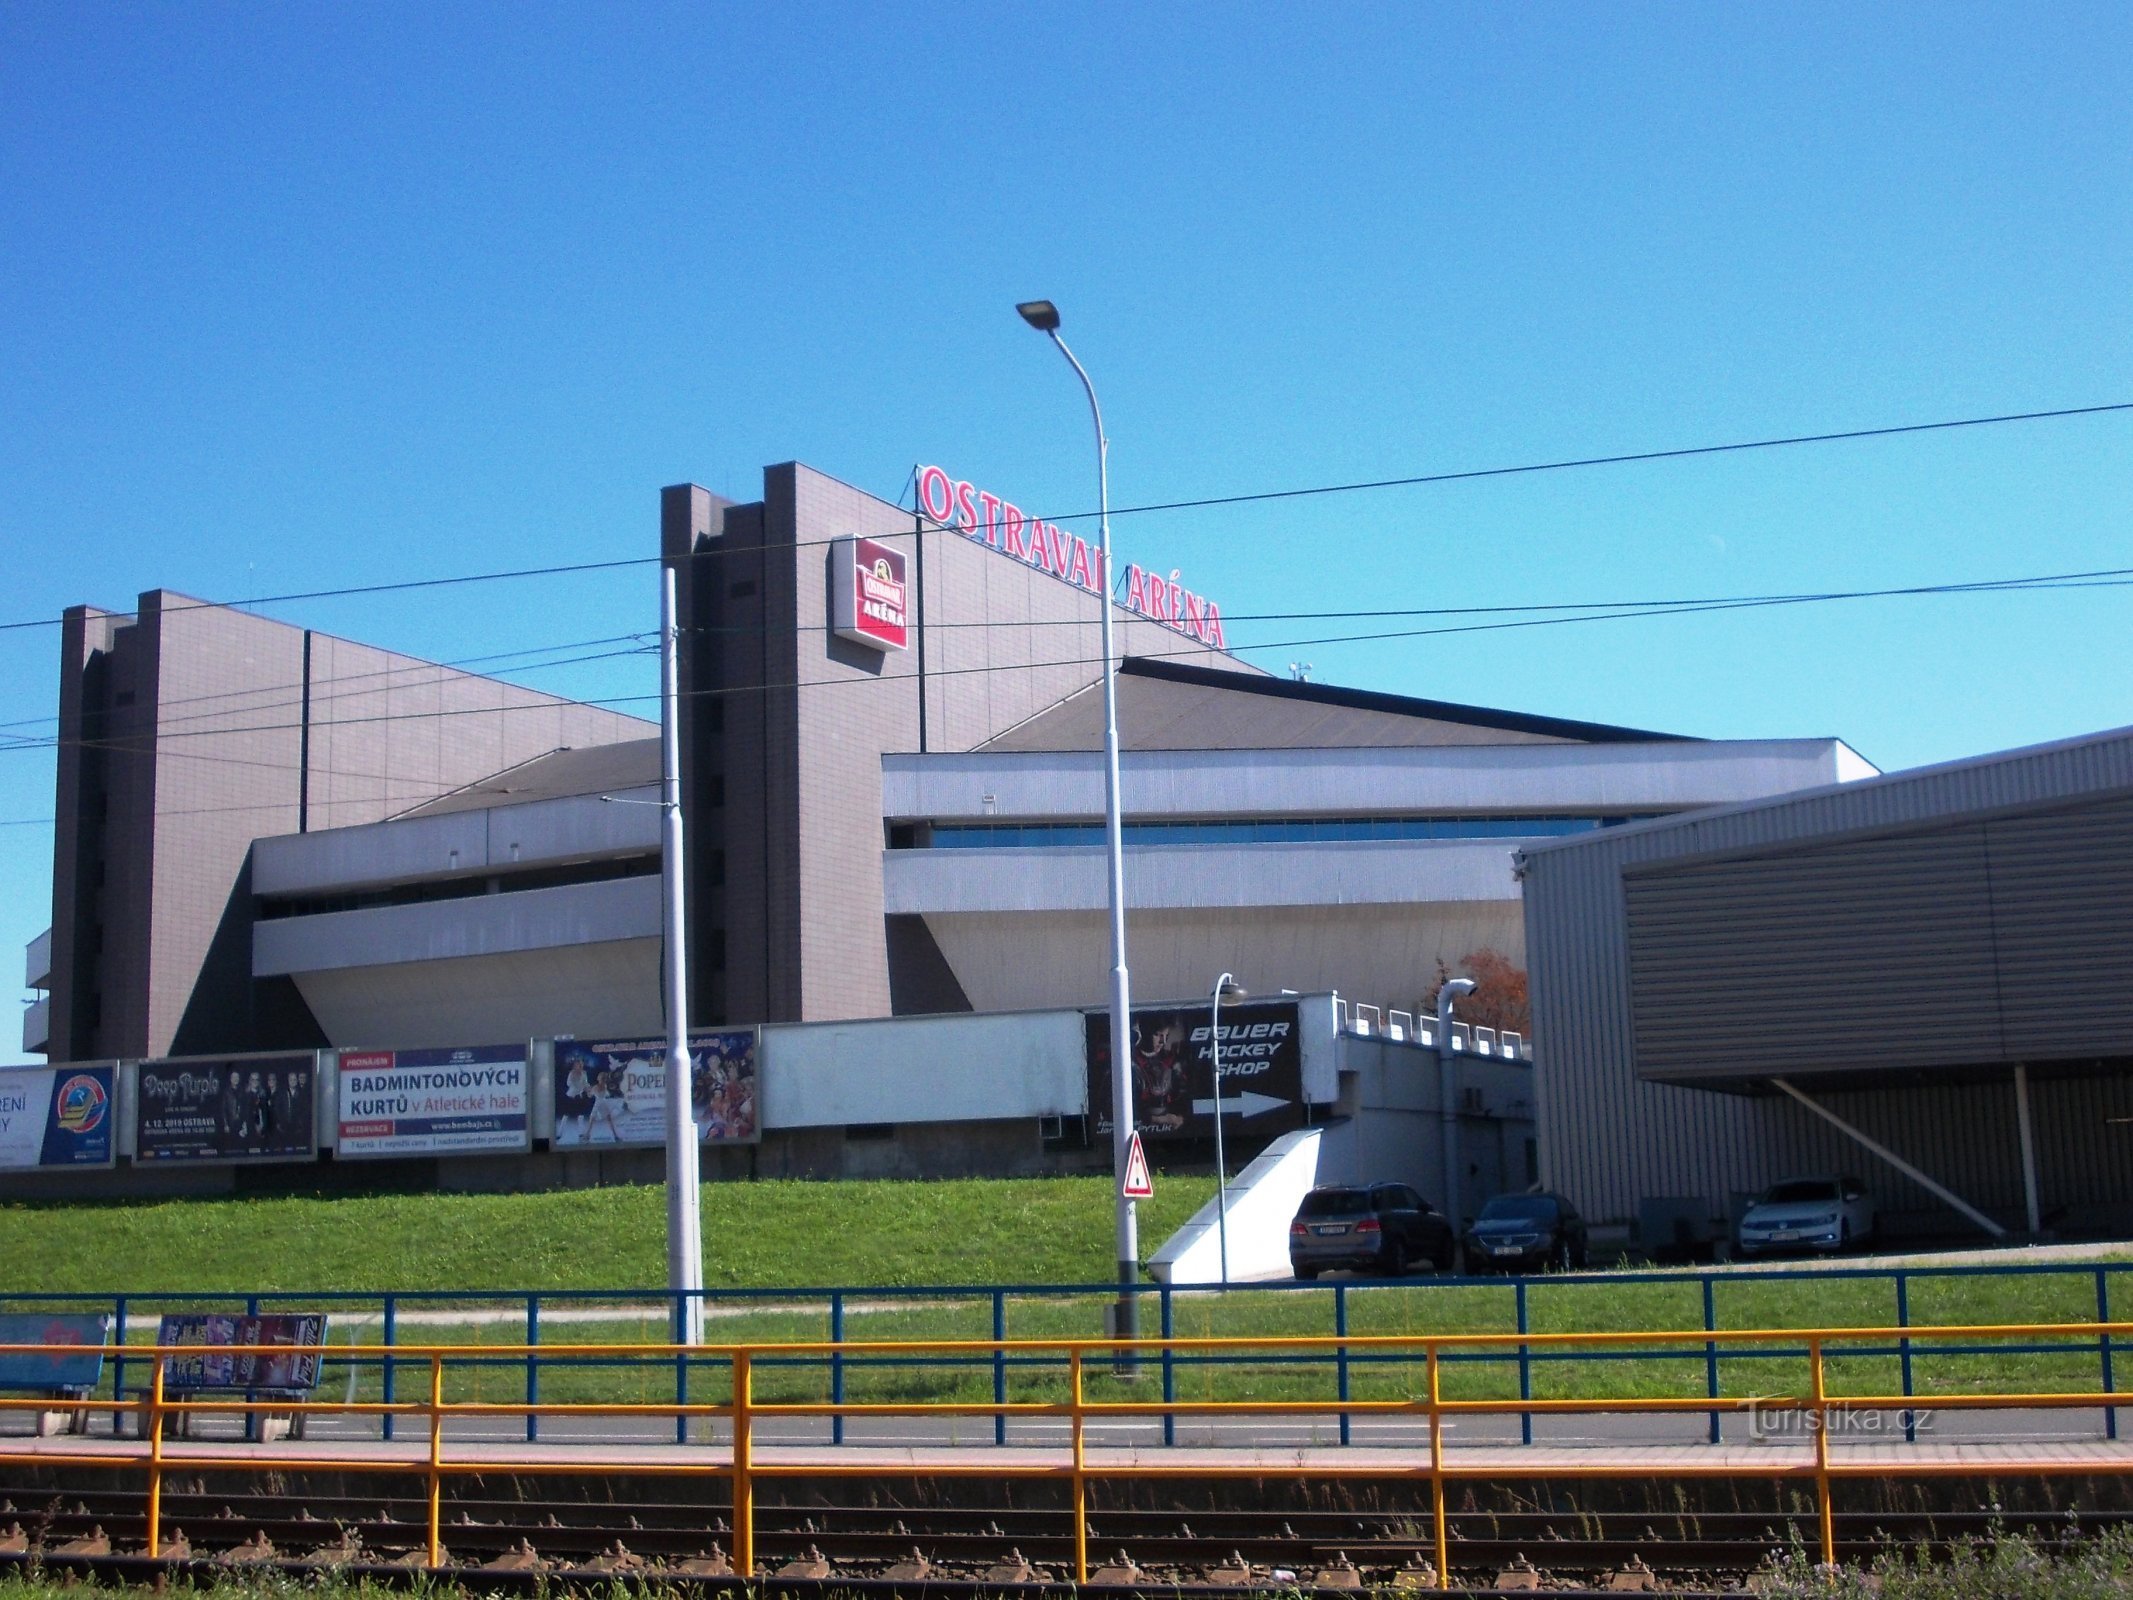 Ostravar Arena - la inauguración ceremonial tuvo lugar en 1986